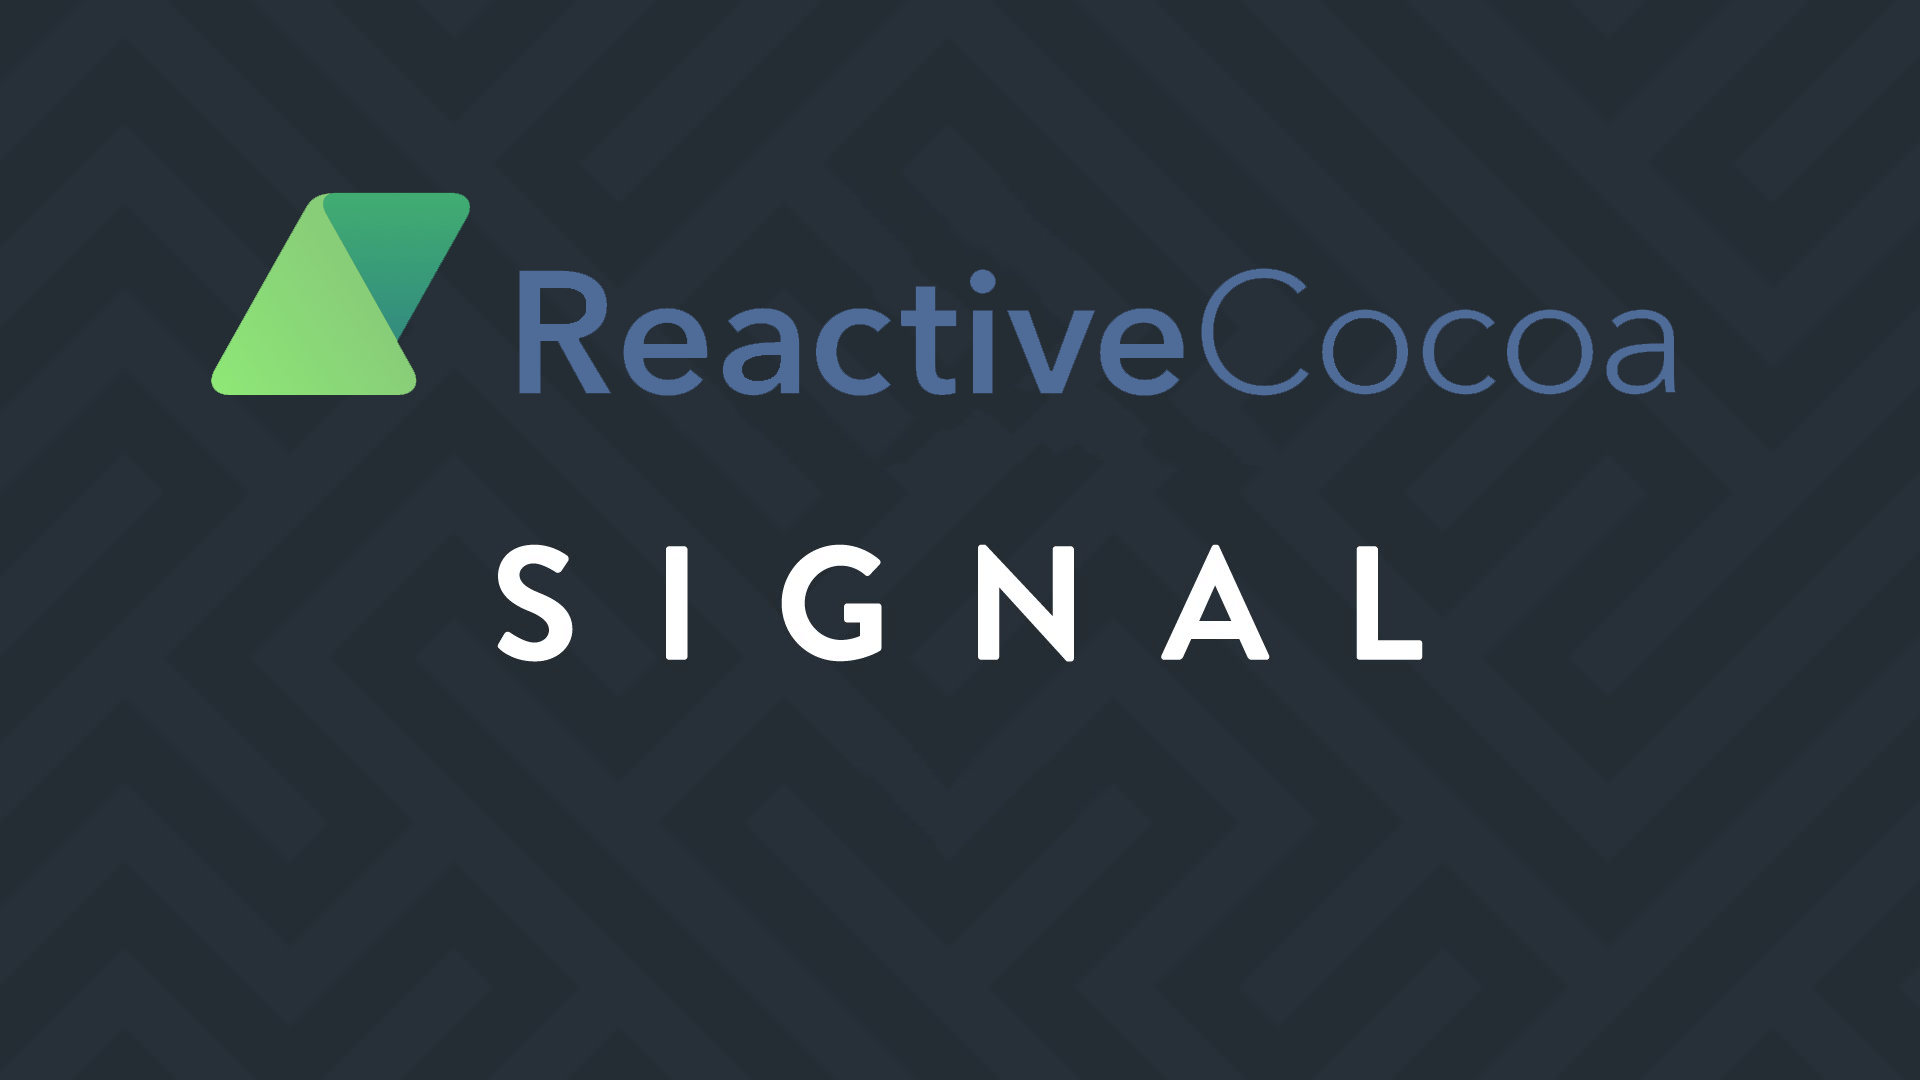 ReactiveCocoa 中 RACSignal 是如何发送信号的